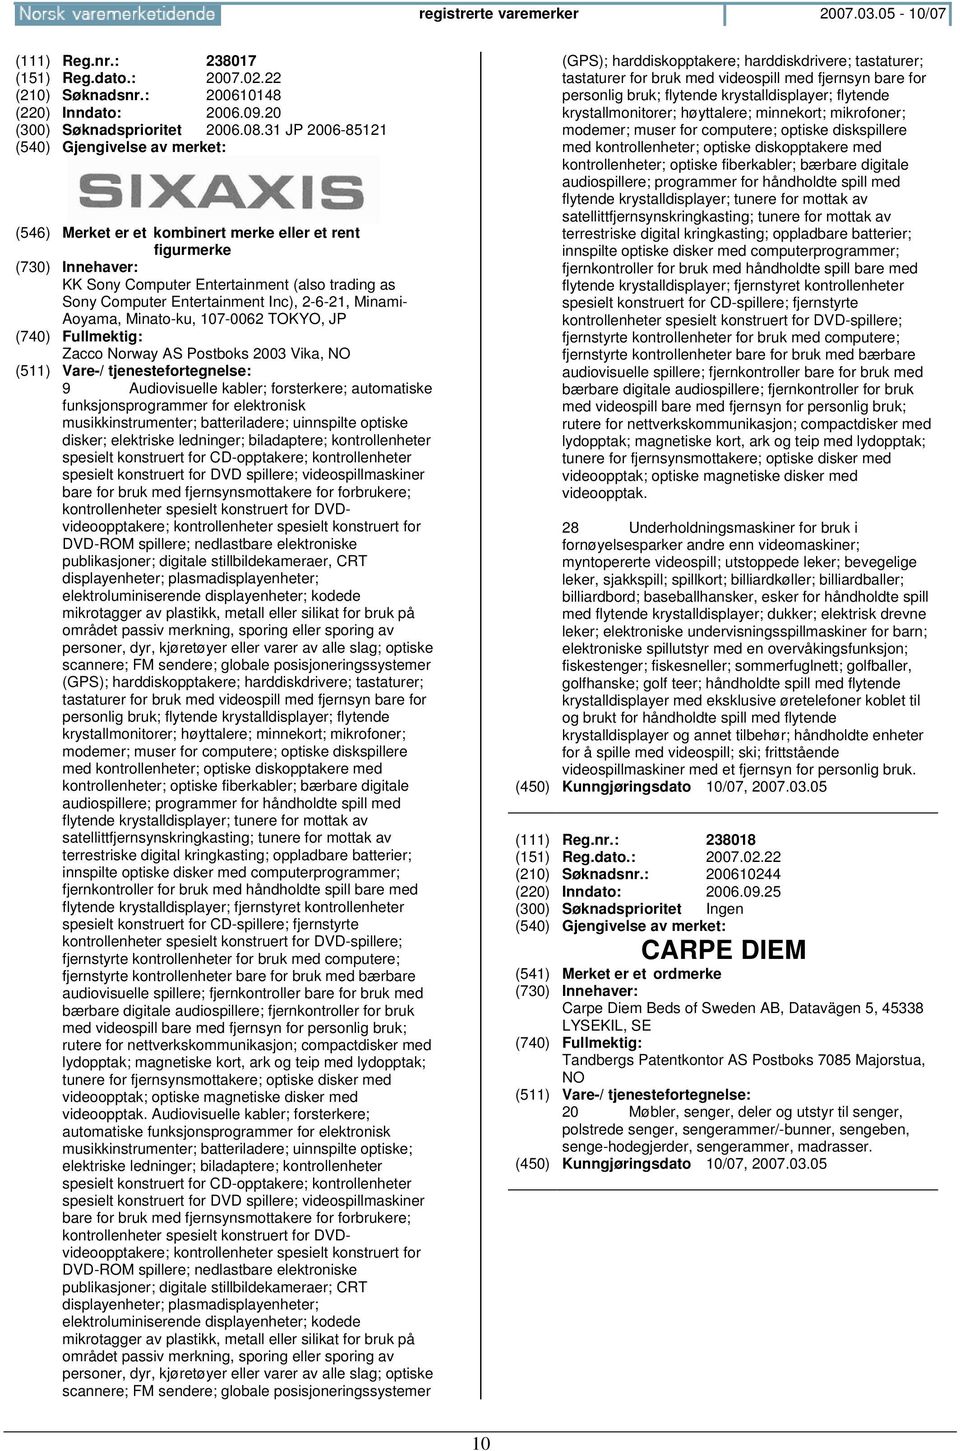 107-0062 TOKYO, JP Zacco Norway AS Postboks 2003 Vika, NO 9 Audiovisuelle kabler; forsterkere; automatiske funksjonsprogrammer for elektronisk musikkinstrumenter; batteriladere; uinnspilte optiske